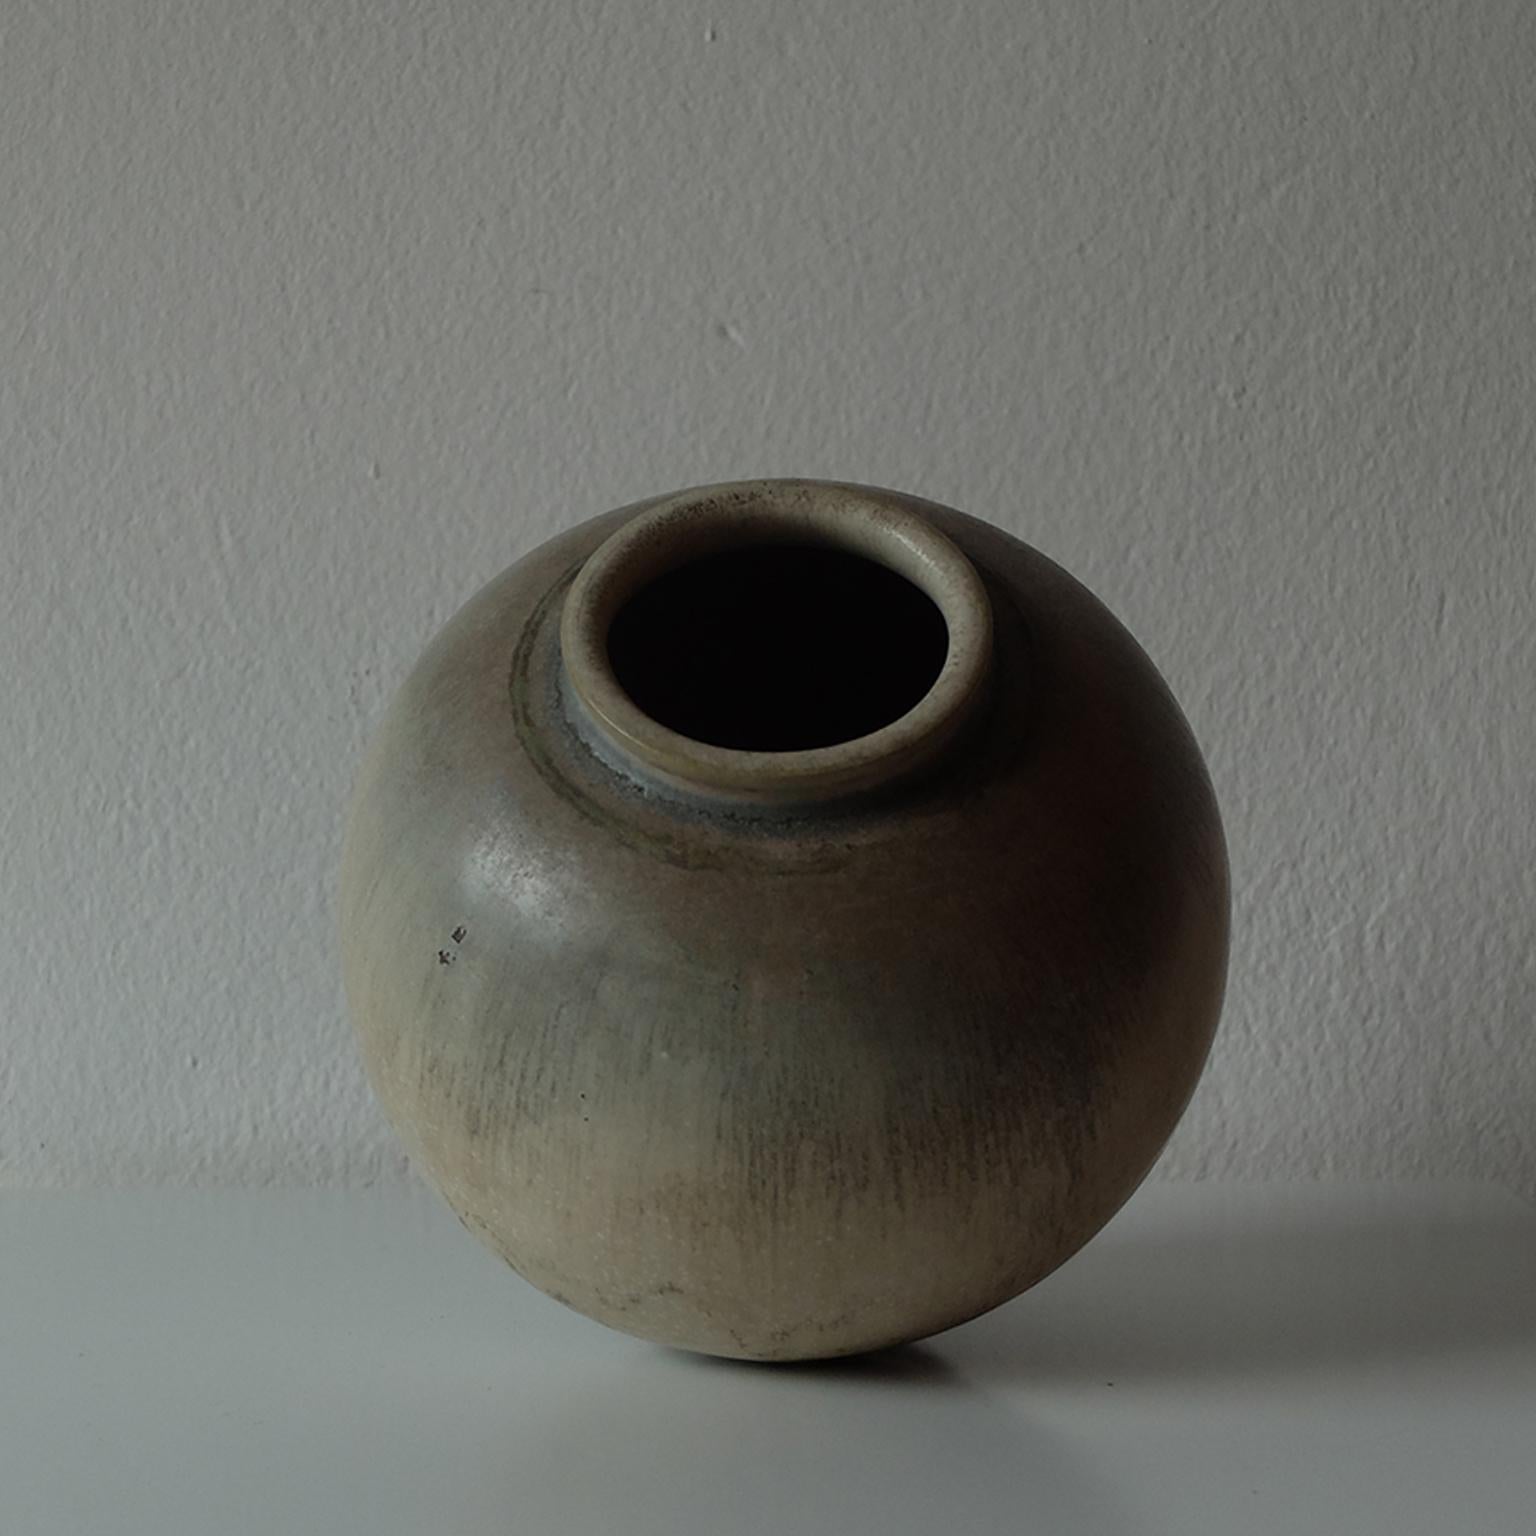 Scandinavian Modern Nils Thorsson for Royal Copenhagen, Glazed Ceramic Vase, 1940s